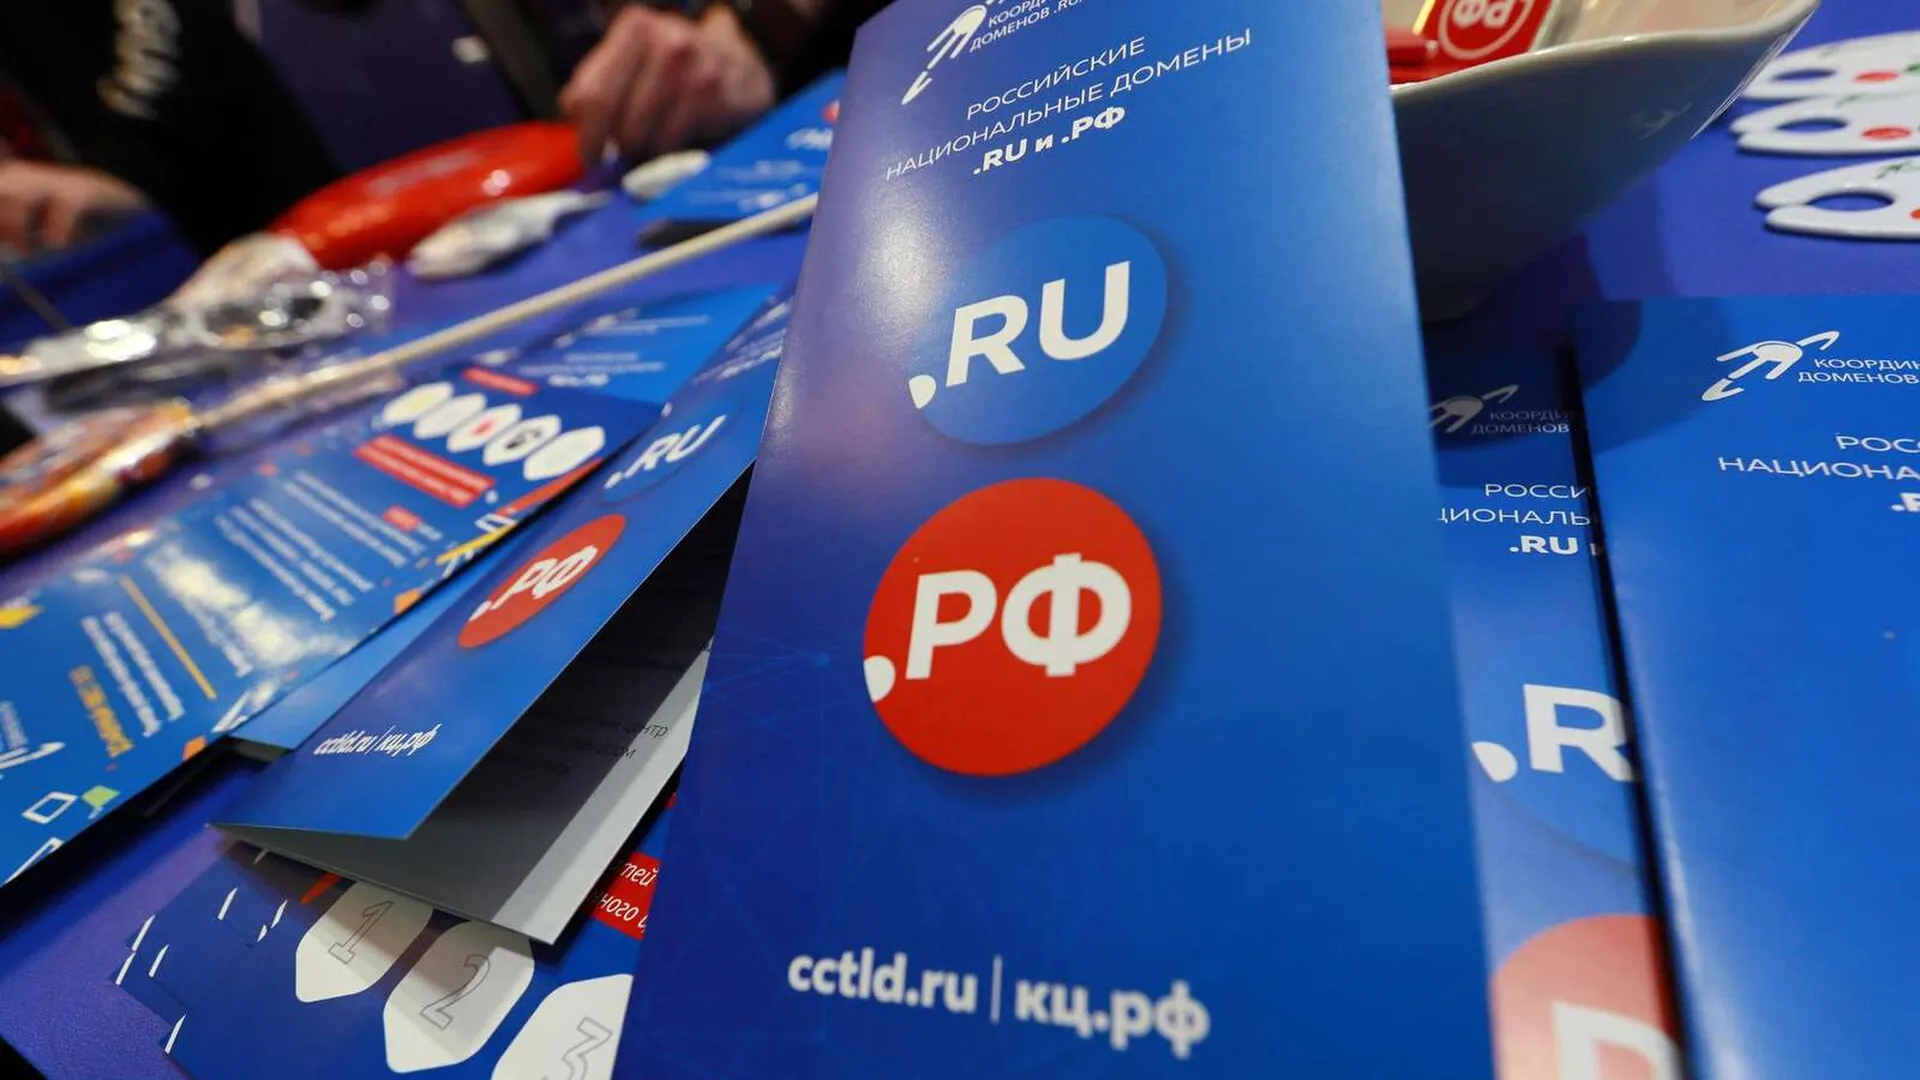 Метавселенные и перспективы Рунета обсудили участники РИФ-2022 в Подмосковье